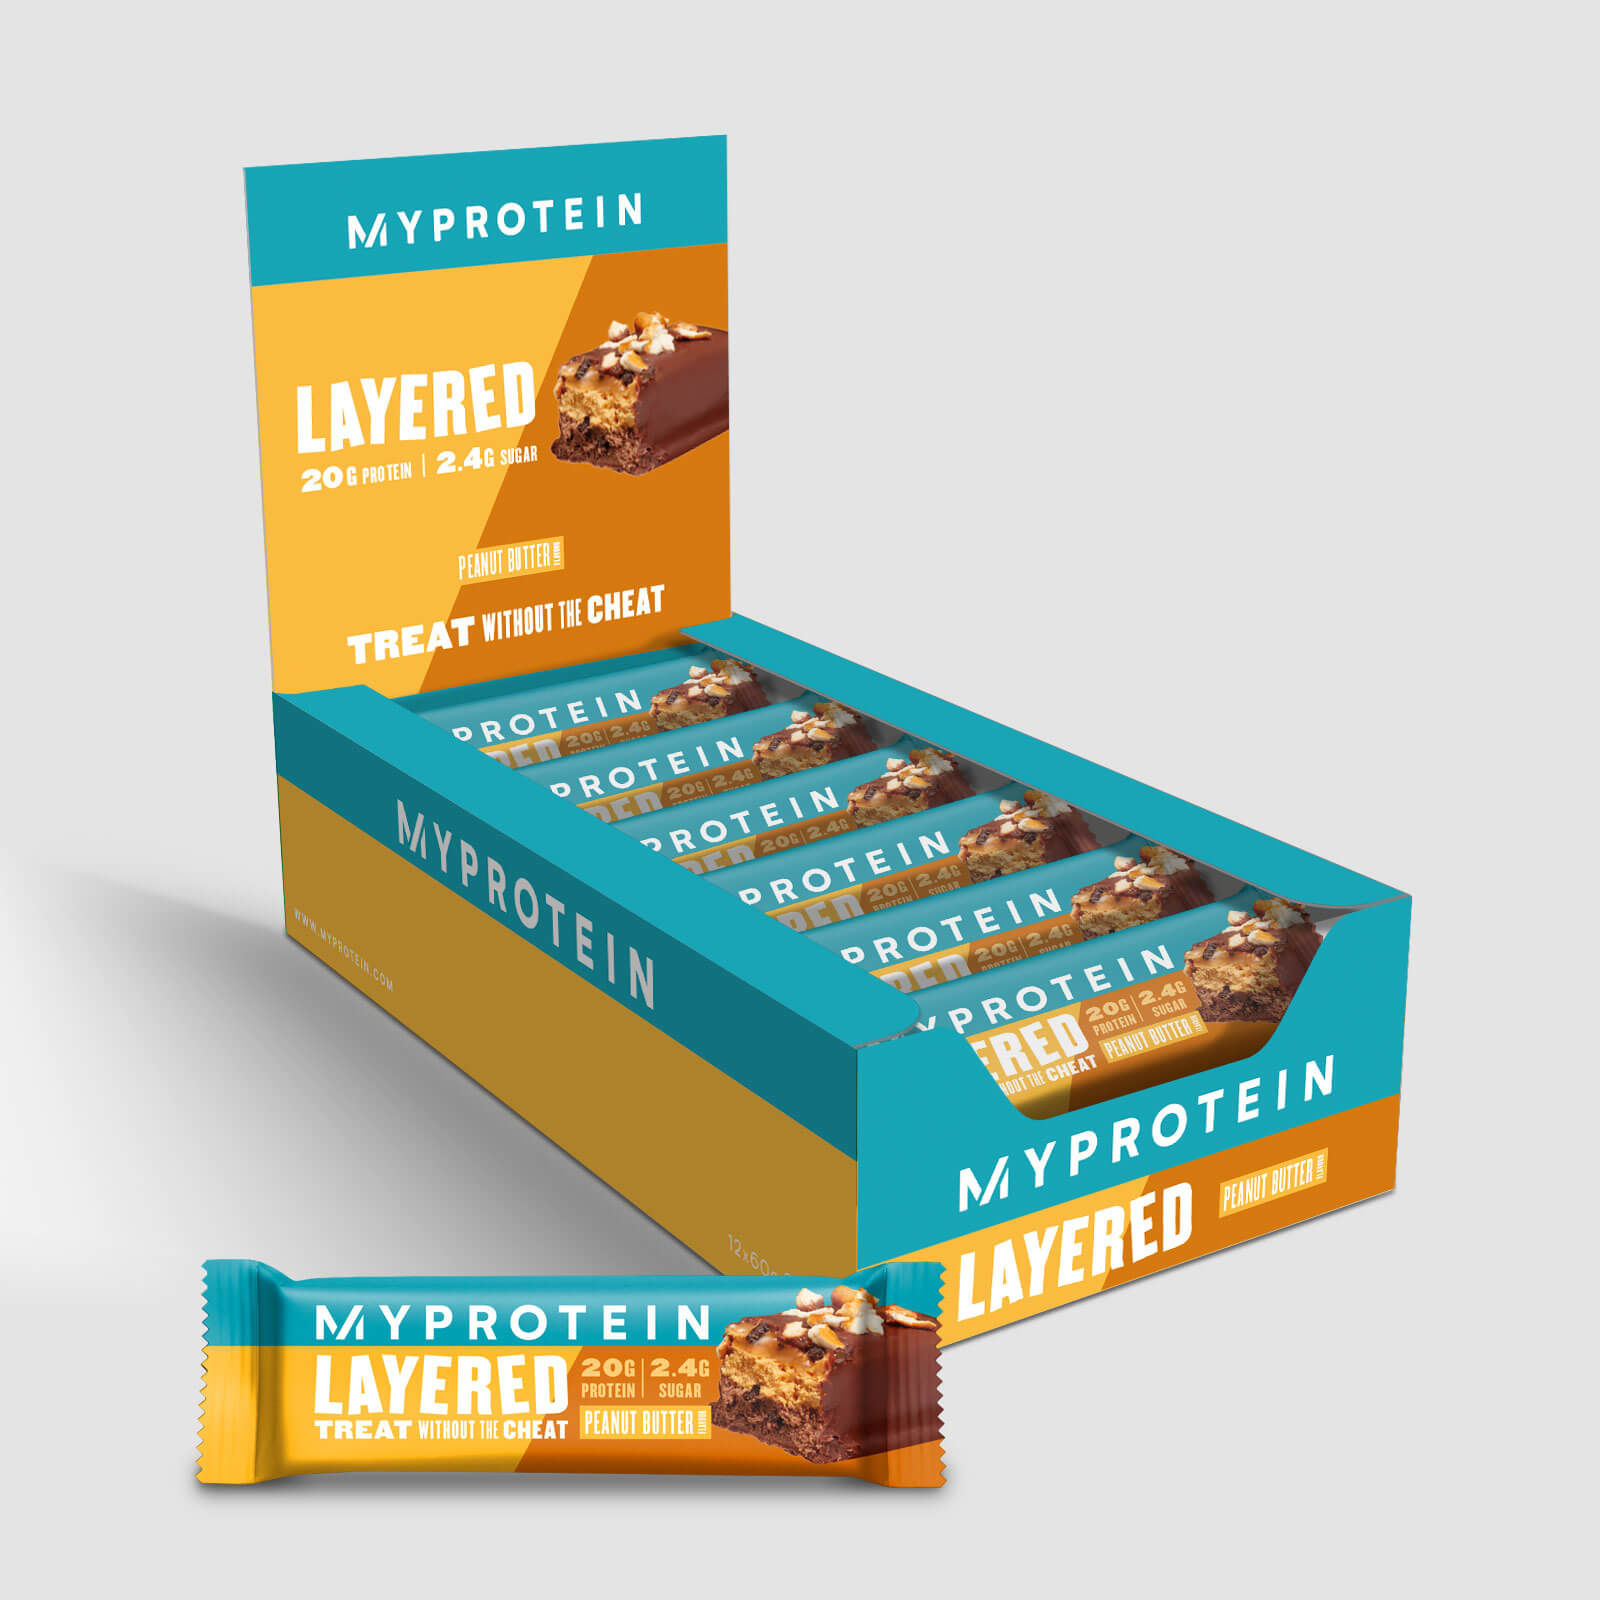 Myprotein 6 Layer Proteinriegel - Erdnussbutter